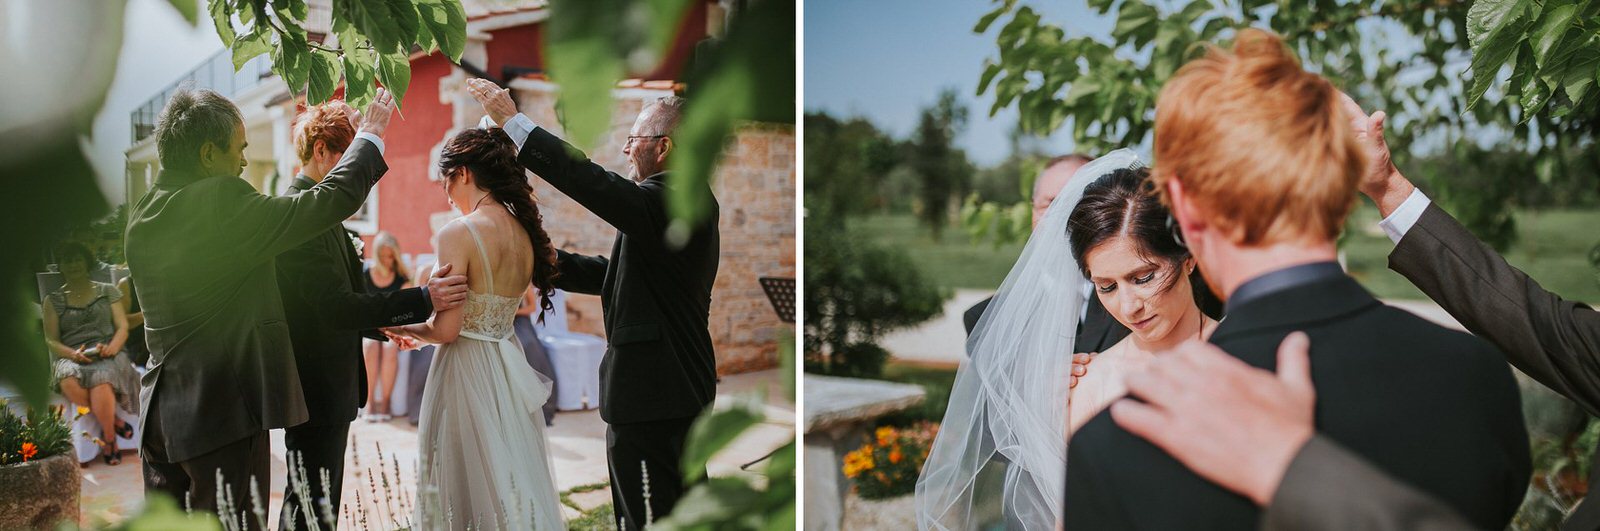 Istria wedding photographer_Dalibora_Bijelic_0048.jpg